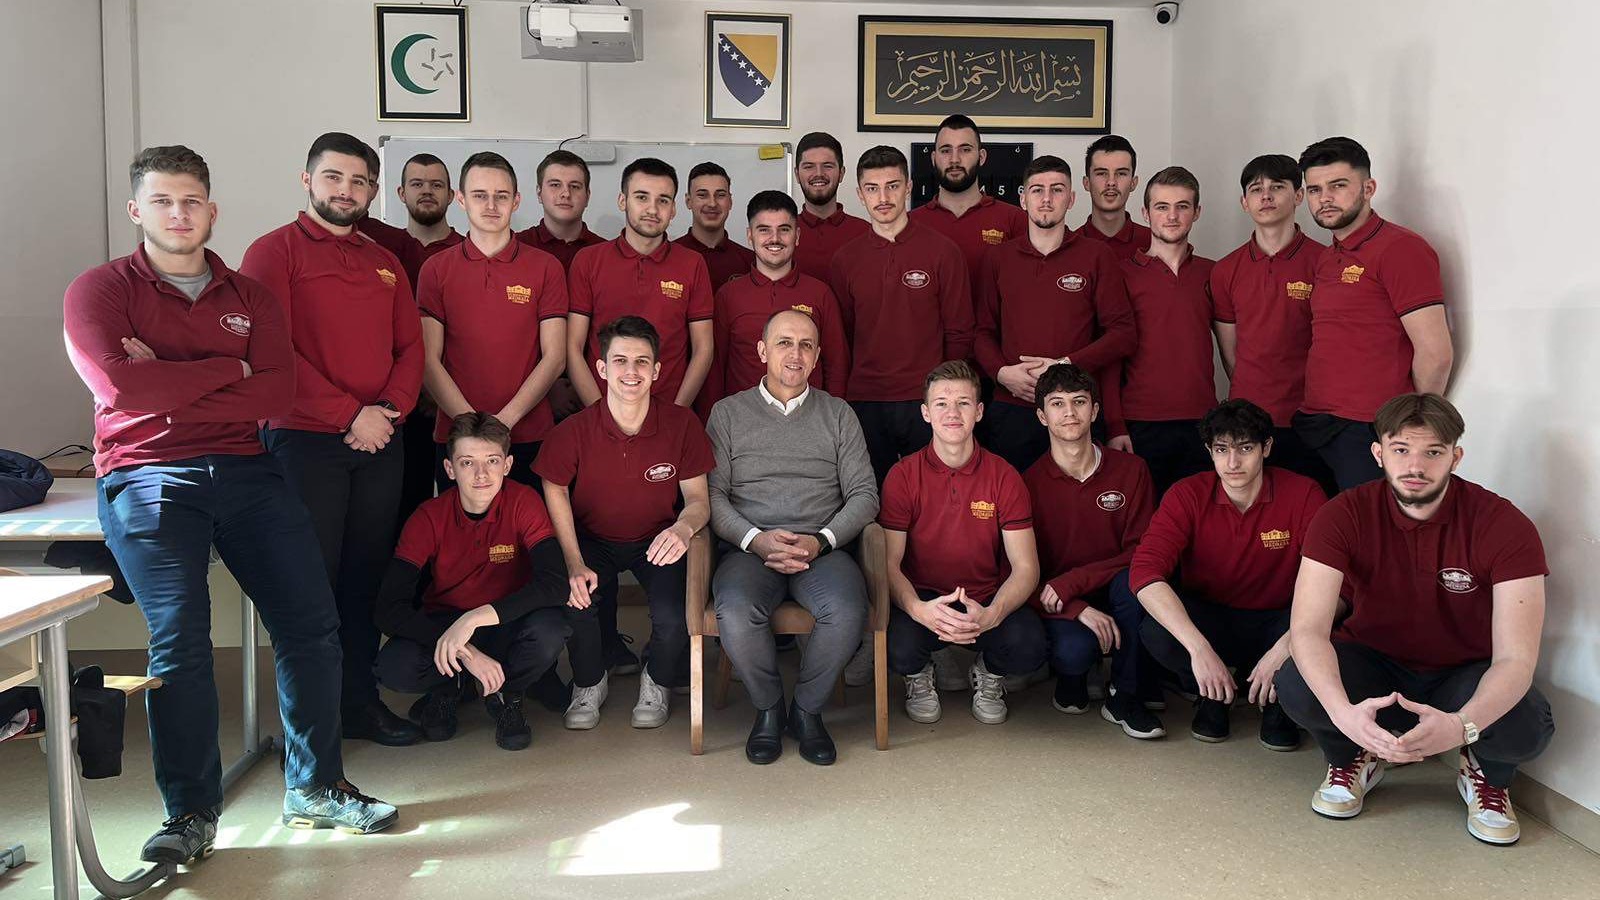 Lijepa gesta: Učenici Elči Ibrahim-pašine medrese razredniku poklonili putovanje na umru